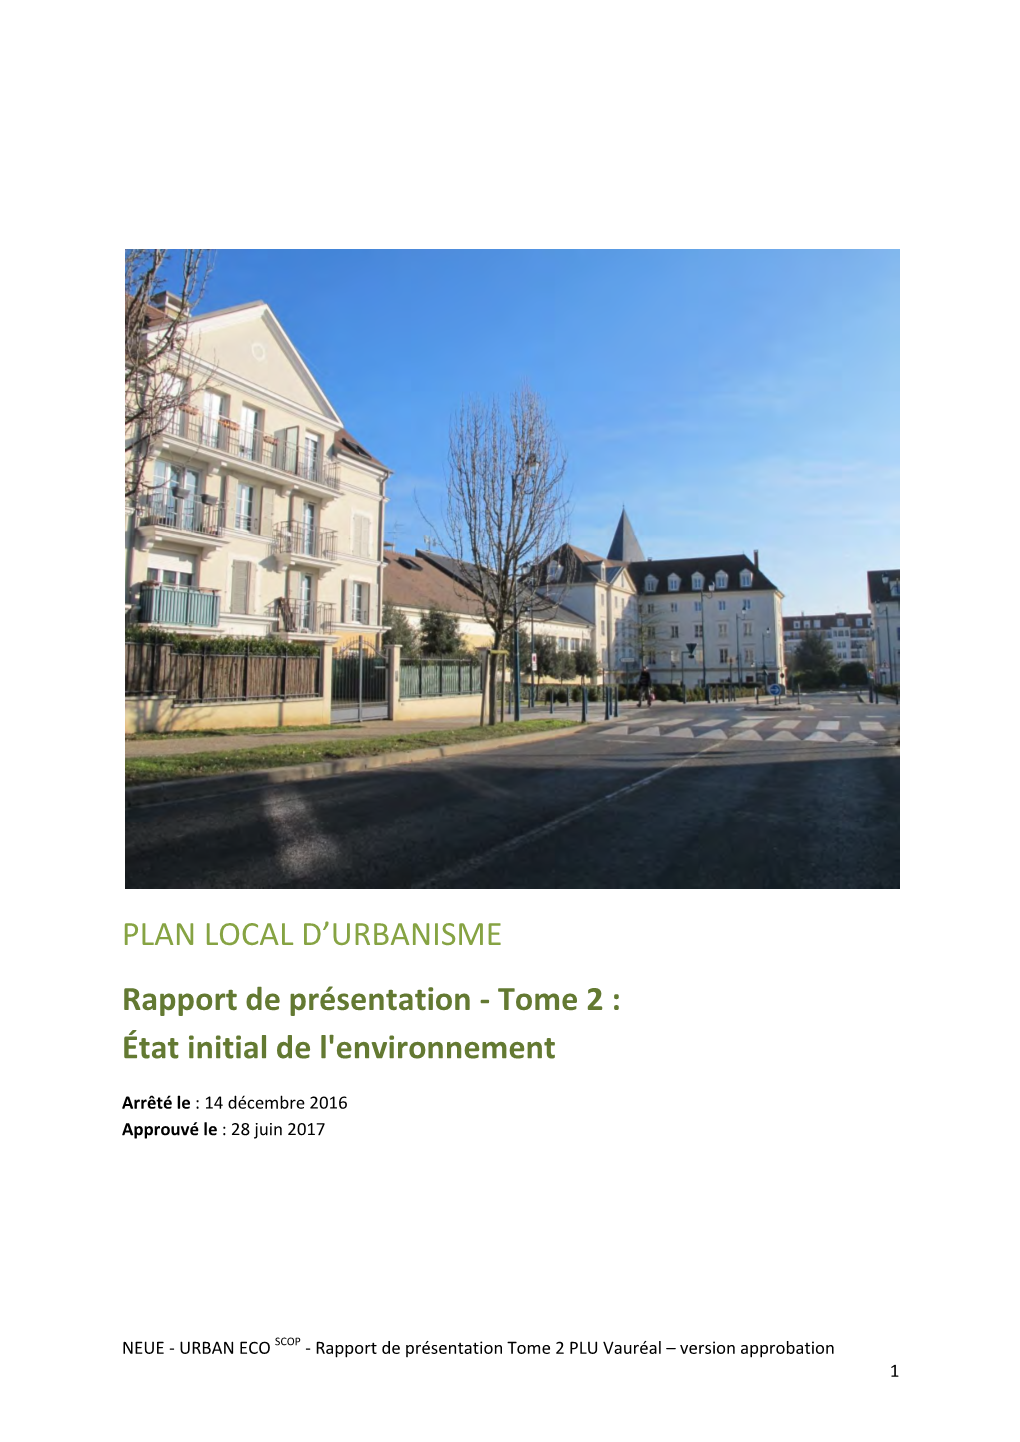 PLAN LOCAL D'urbanisme Rapport De Présentation